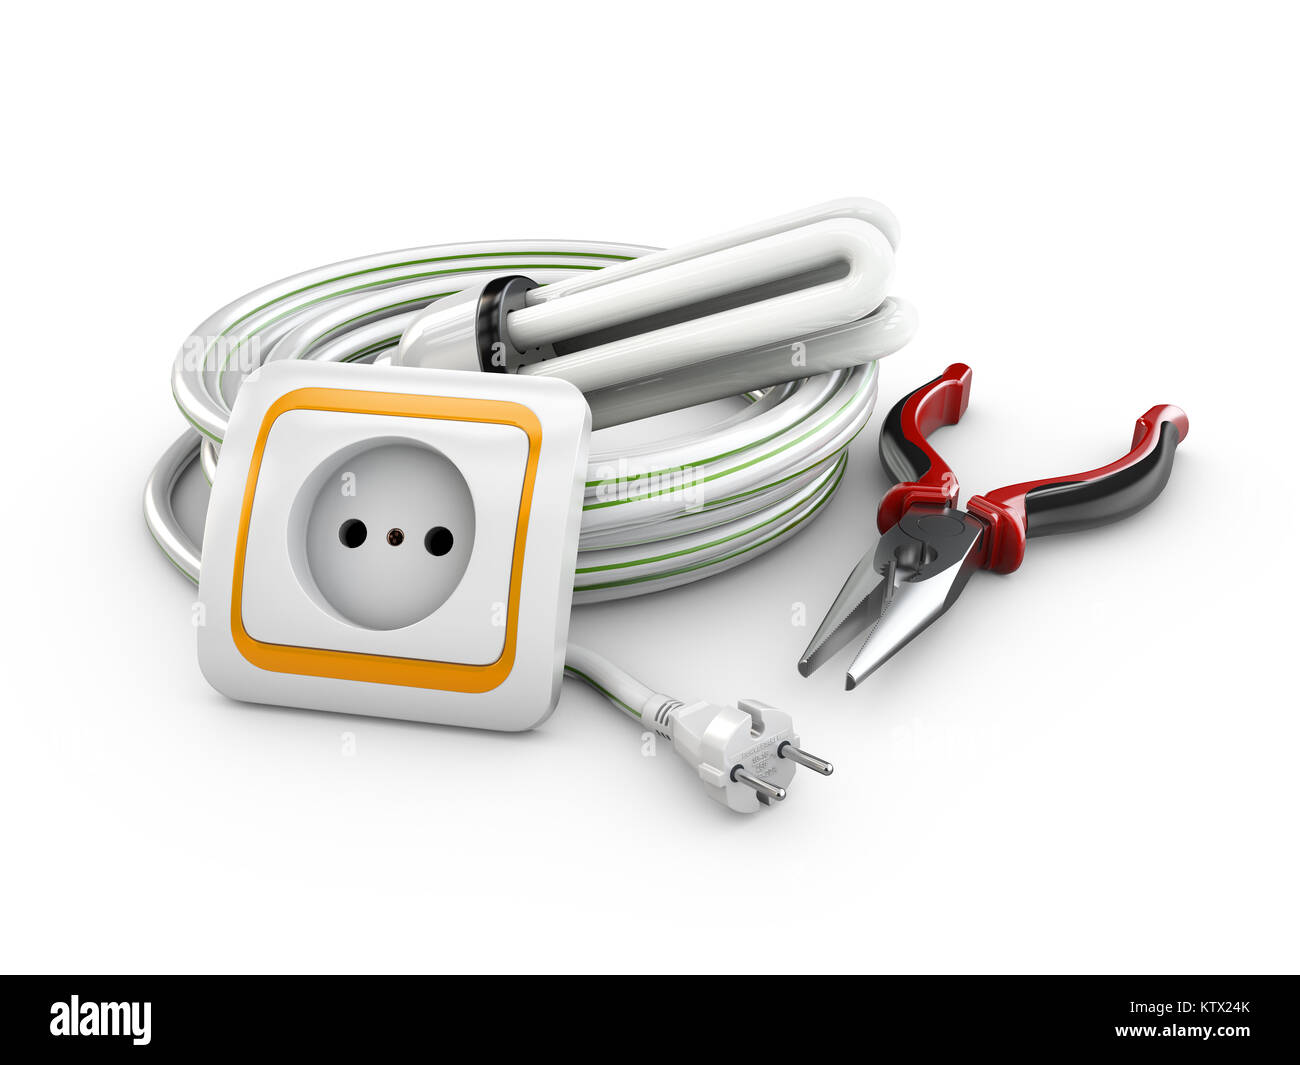 Ilustración 3d de cable eléctrico, toma y pinzas. Componentes eléctricos e instrumentos Foto de stock